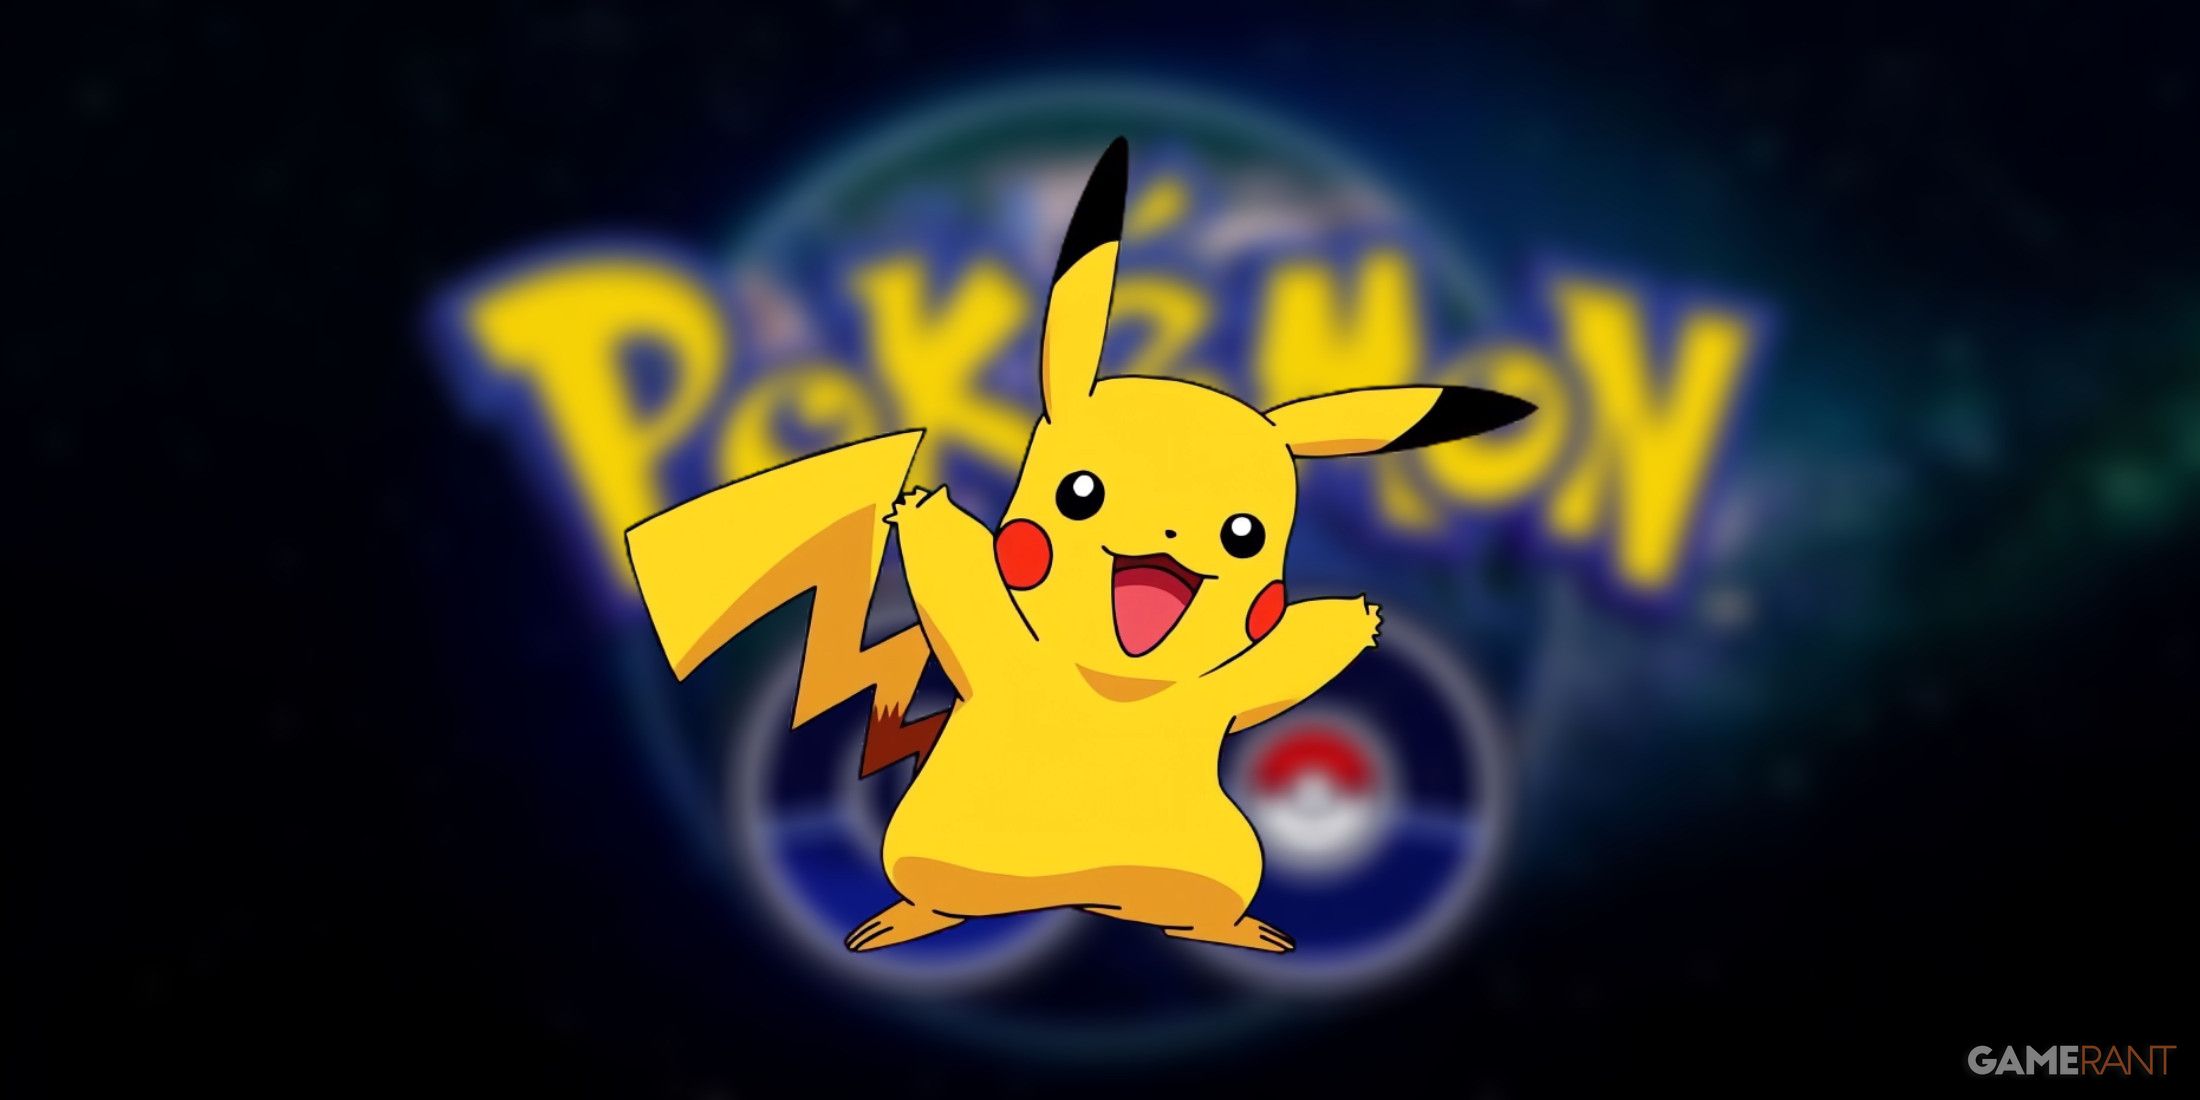 blurred pokemon go logo with pikachu